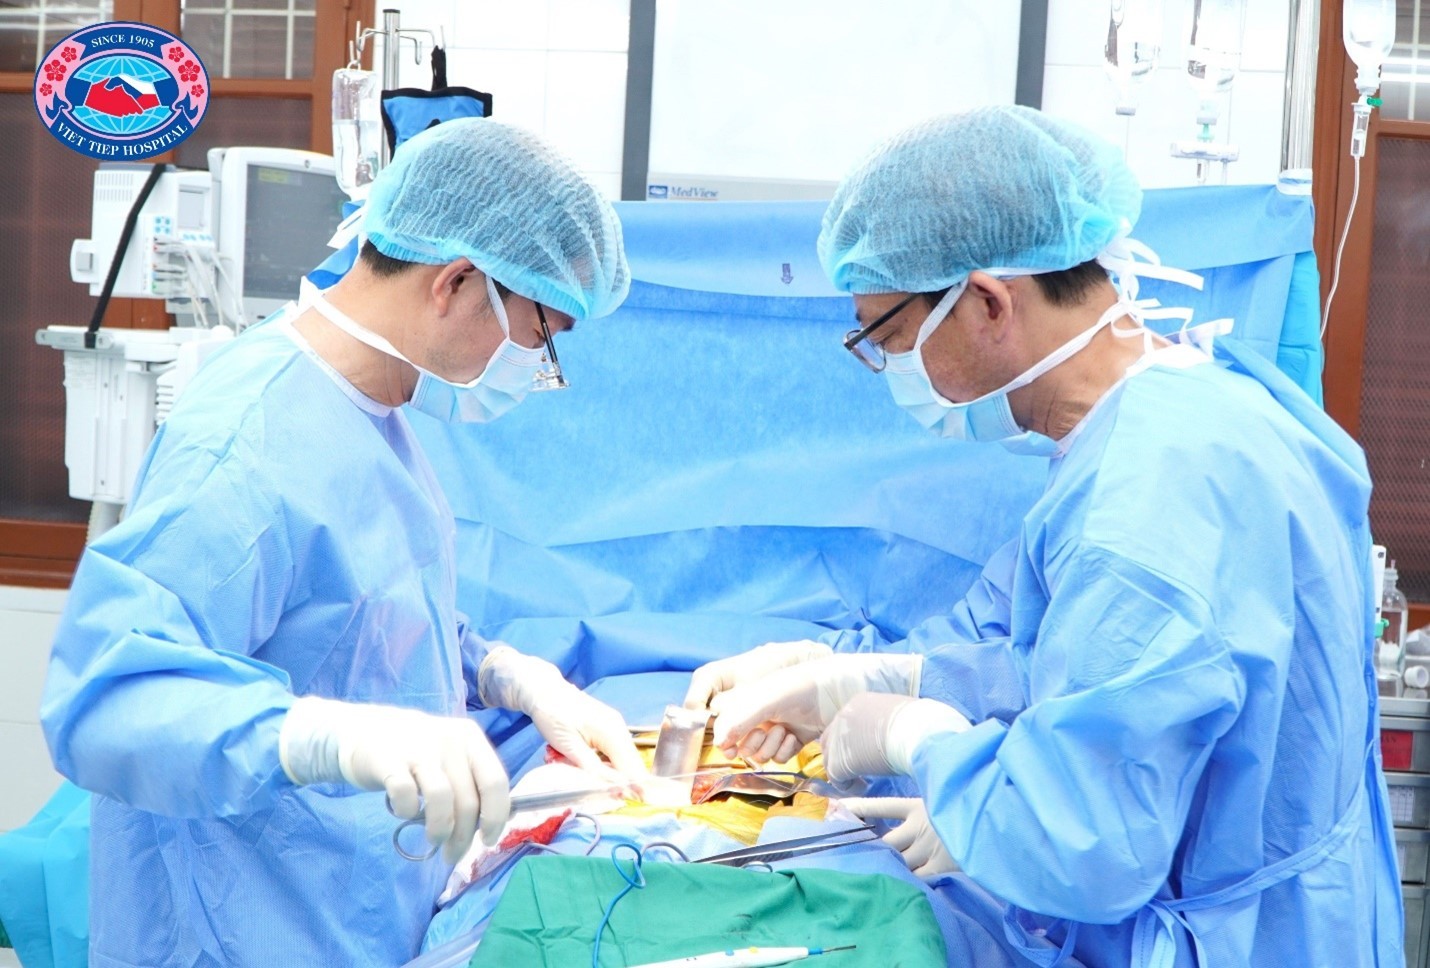 Các phẫu thuật viên Bệnh viện Hữu Nghị Việt Tiệp cùng chuyên gia Bệnh viện Hữu nghị Việt Đức thực hiện phẫu thuật ghép thận của người cha T.X.D sang cho người con T. T. H. A